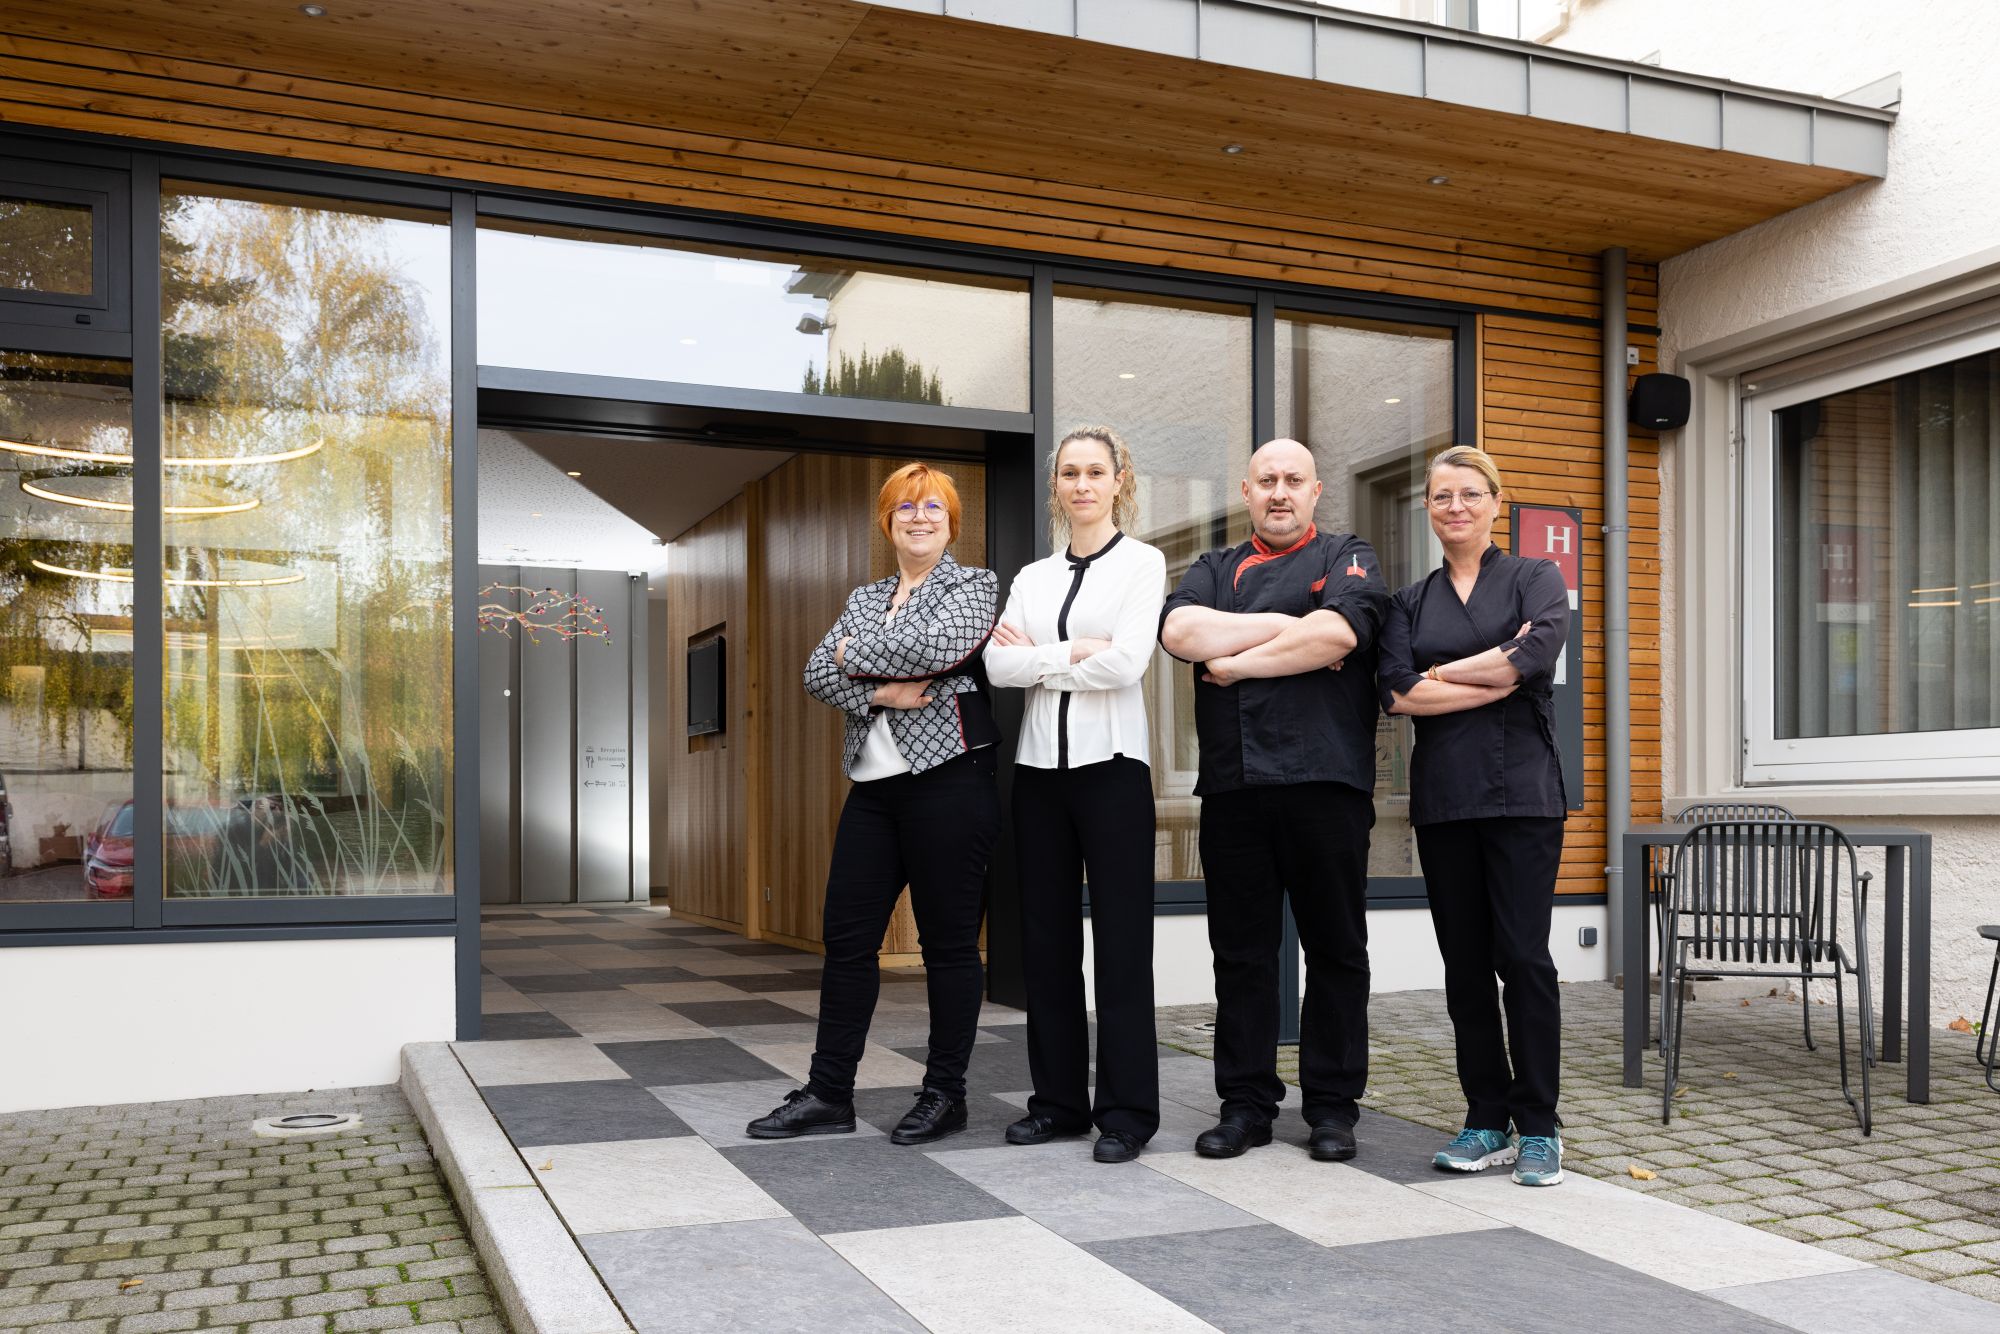 De gauche à droite : Sylvie Drey, chef réception, Carole Adam, chef restaurant, Pascal Gutknecht, chef cuisine, et Françoise Groff, gérante © Serge Nied